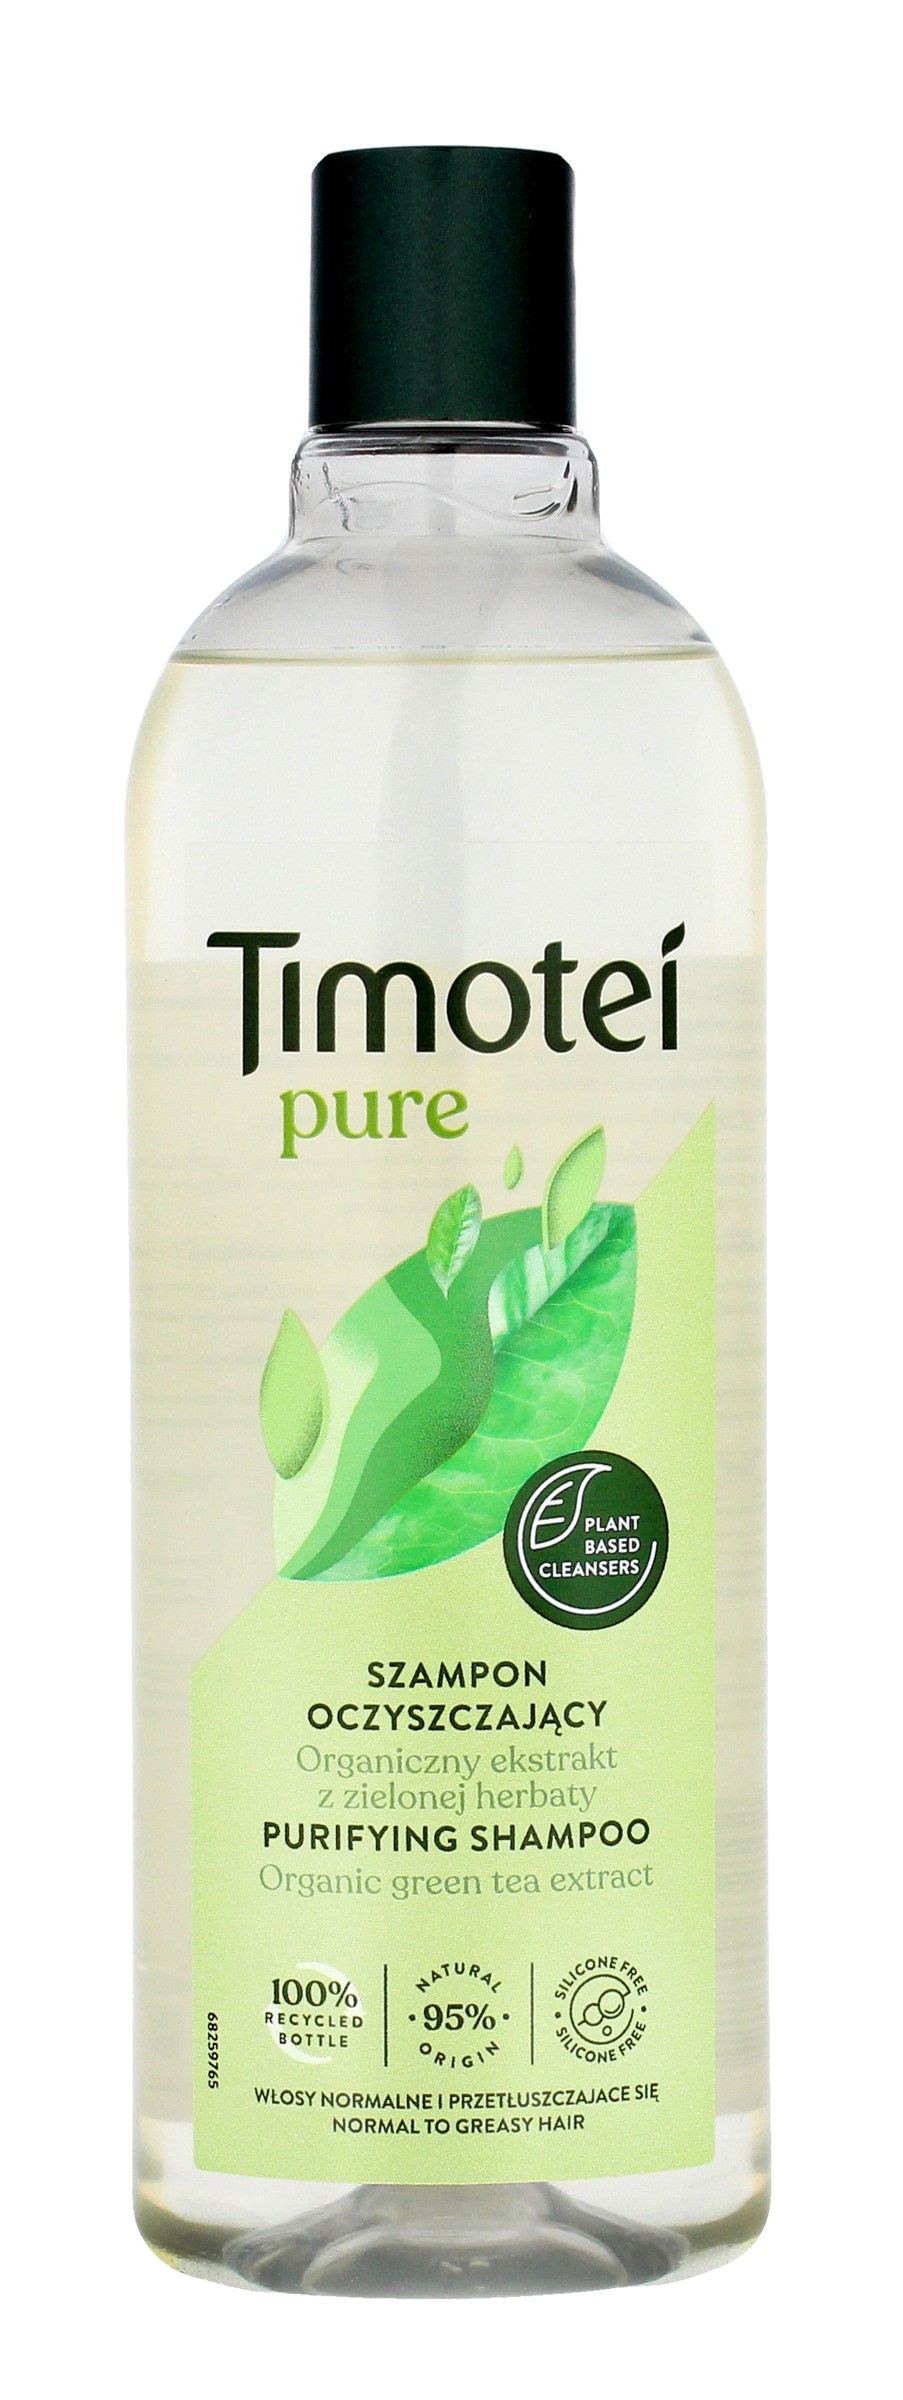 szampon timotei ogórkowy do włosów przetłuszczających się